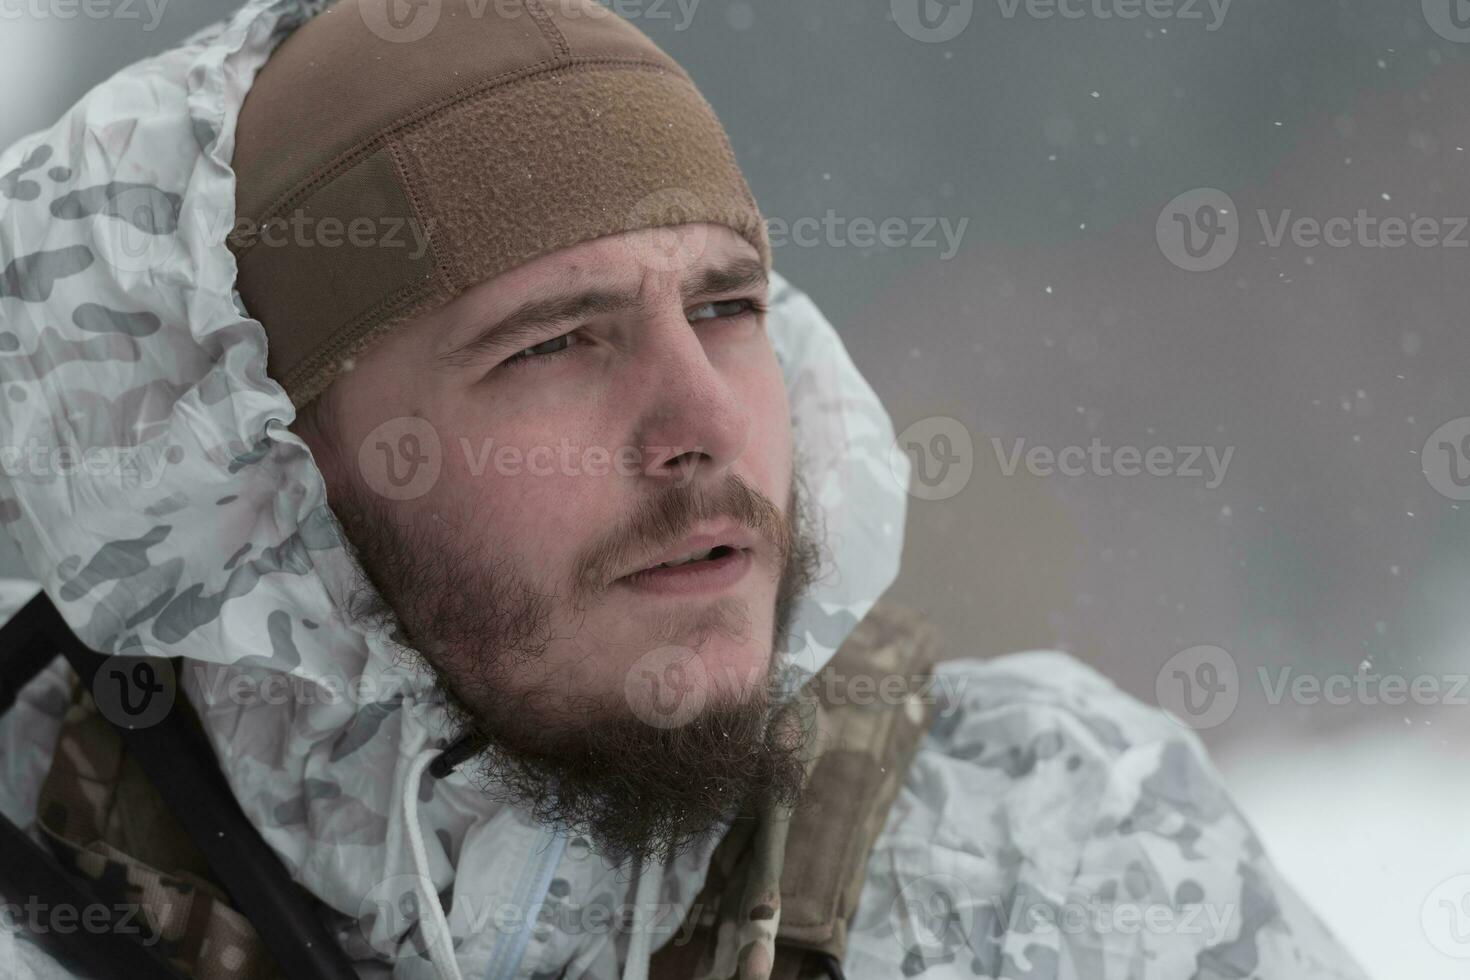 guerra de invierno en las montañas árticas. operación en condiciones frías. soldado en uniforme camuflado de invierno en el ejército de guerra moderno en un día de nieve en el campo de batalla del bosque con un rifle. enfoque selectivo foto